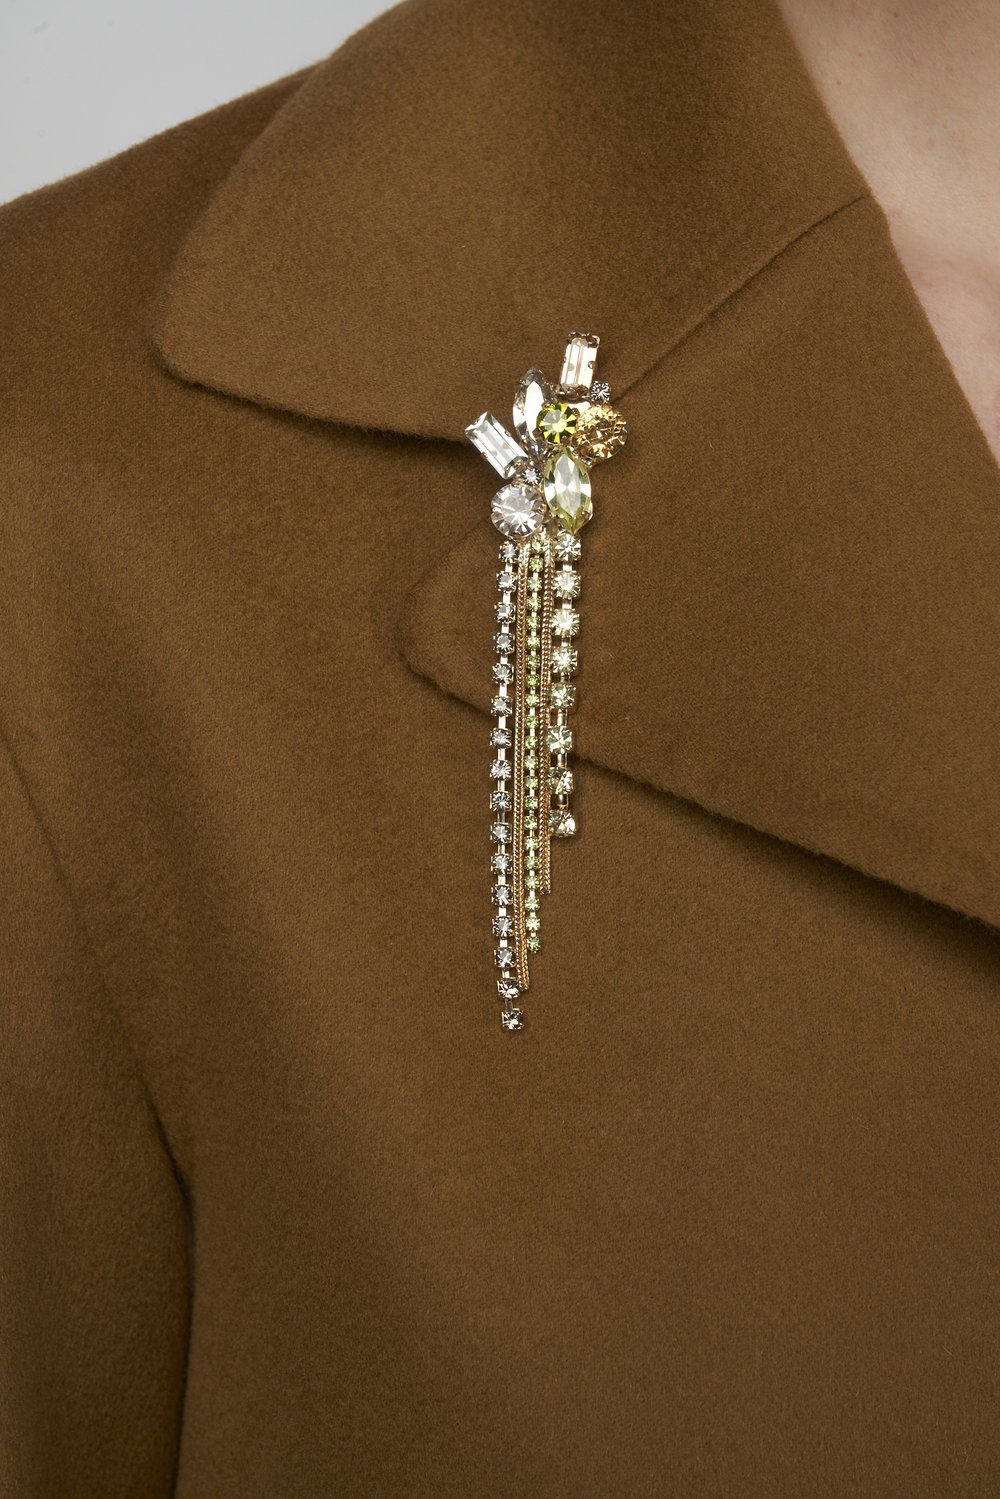 Pin for clothes — Julie de Libran Paris